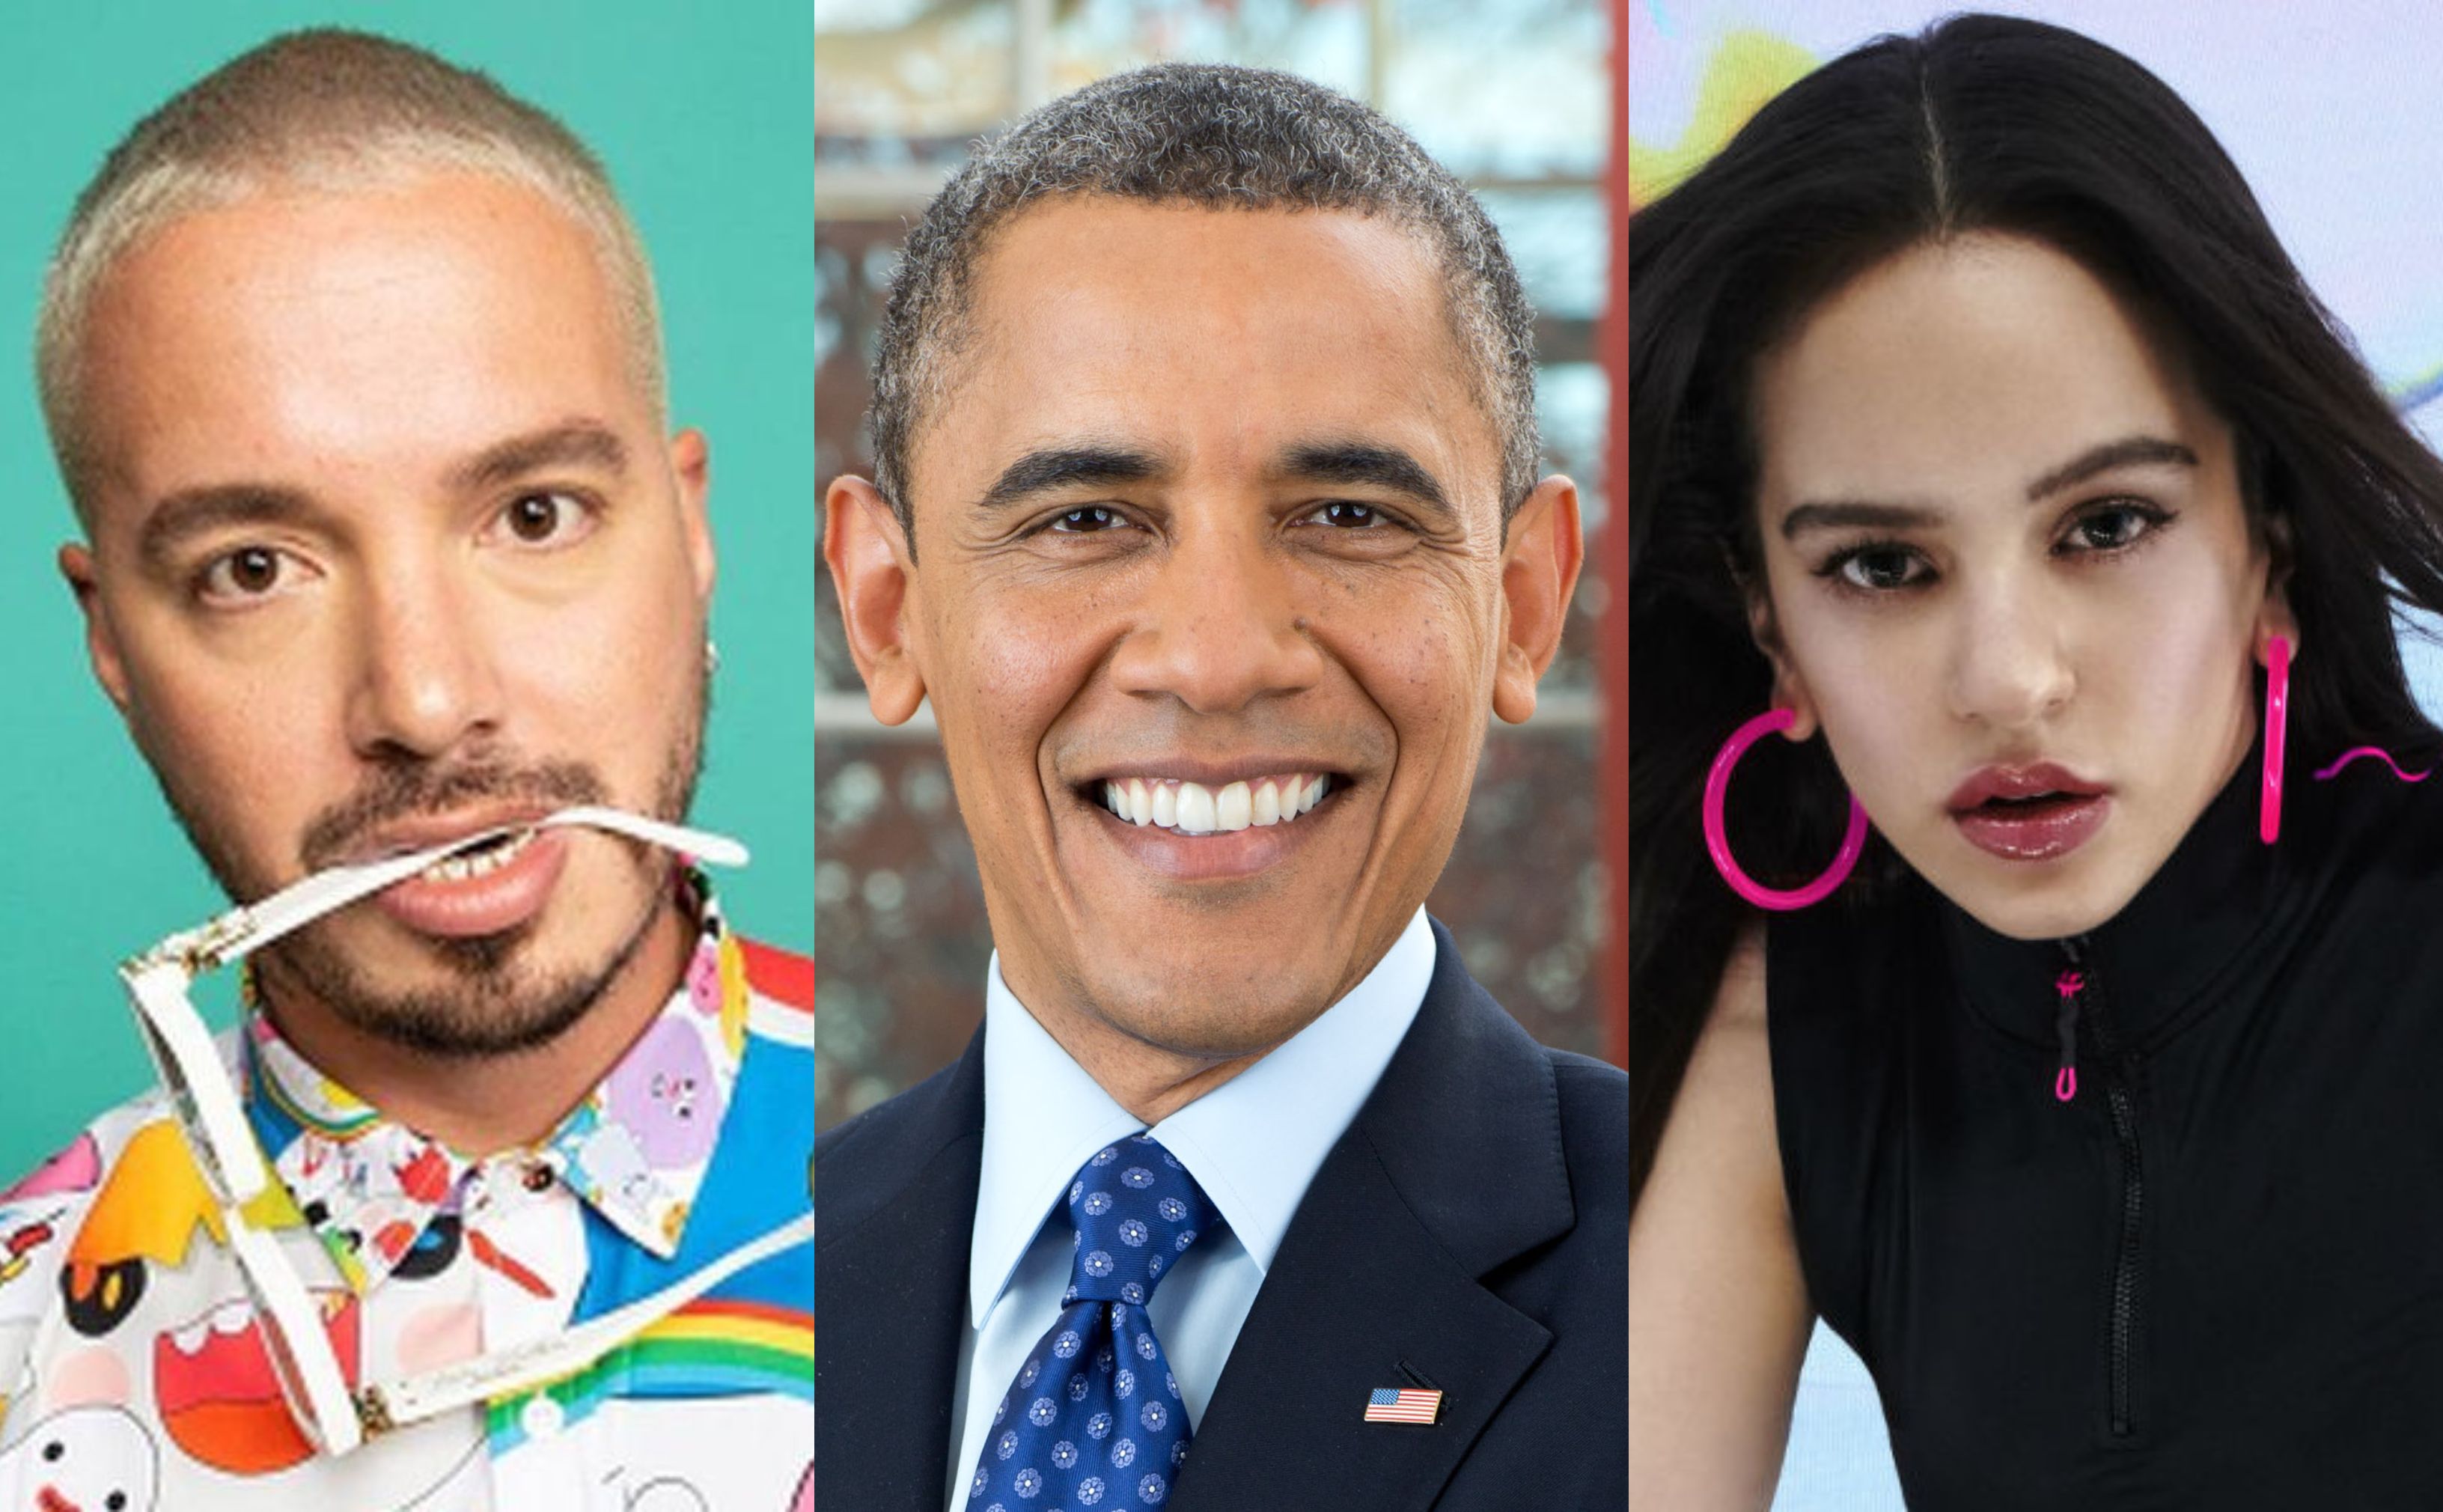 Obama incluyó a Rosalía y J Balvin entre los artistas que recomienda escuchar